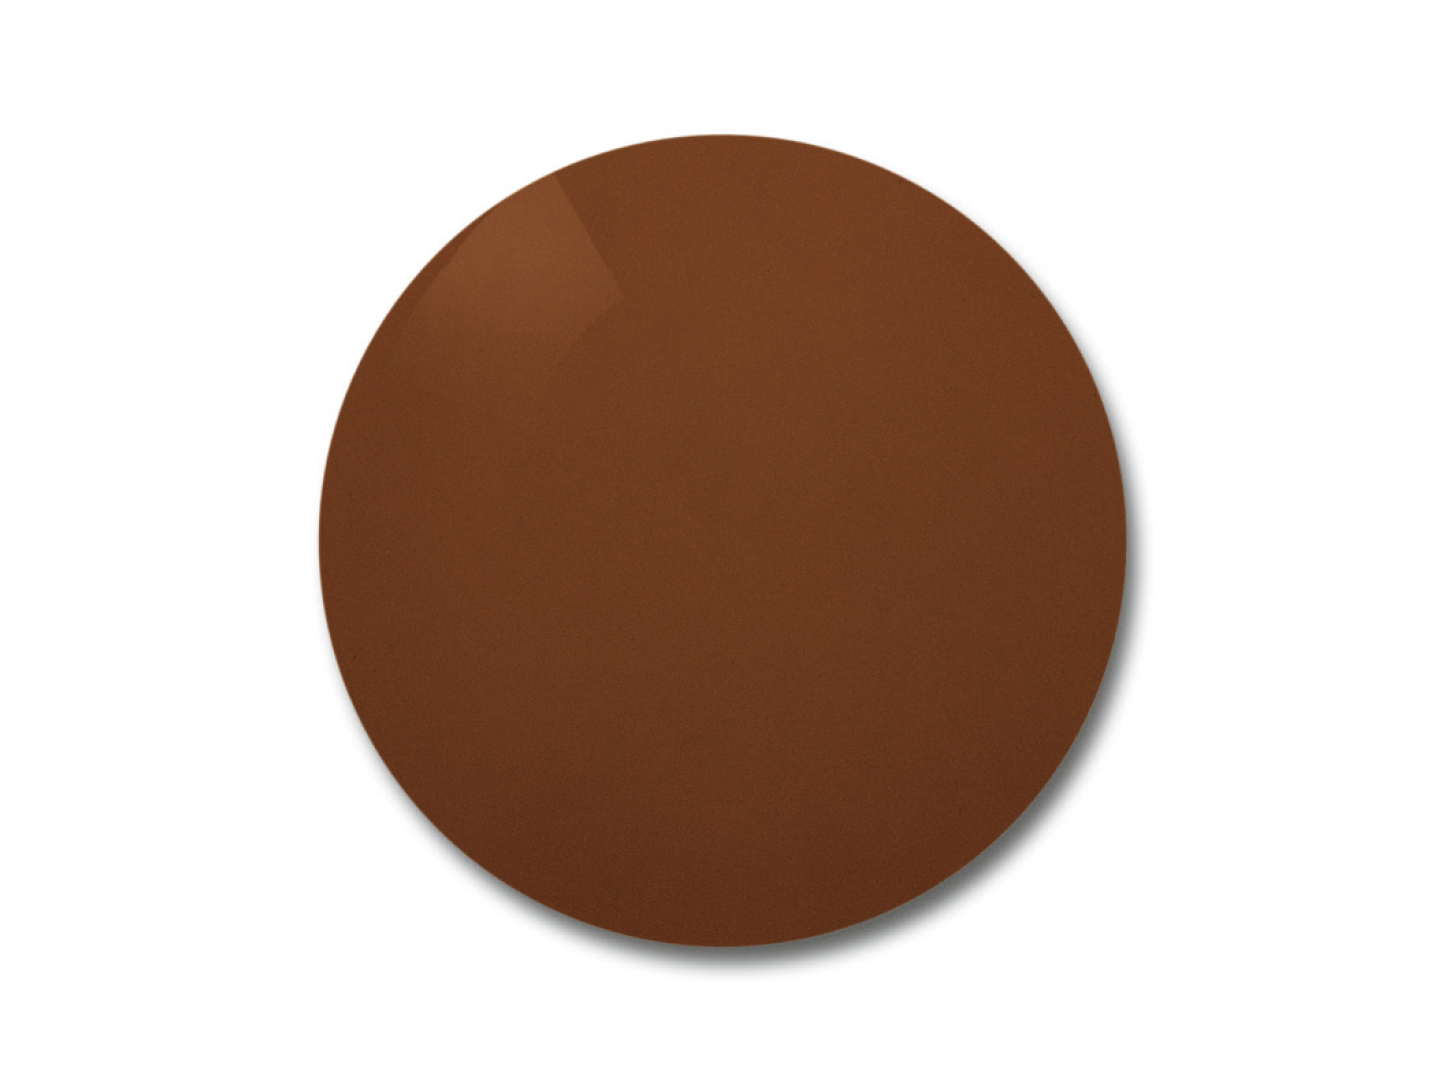 Illustrering av ZEISS Skylet Road-glas med brun färg